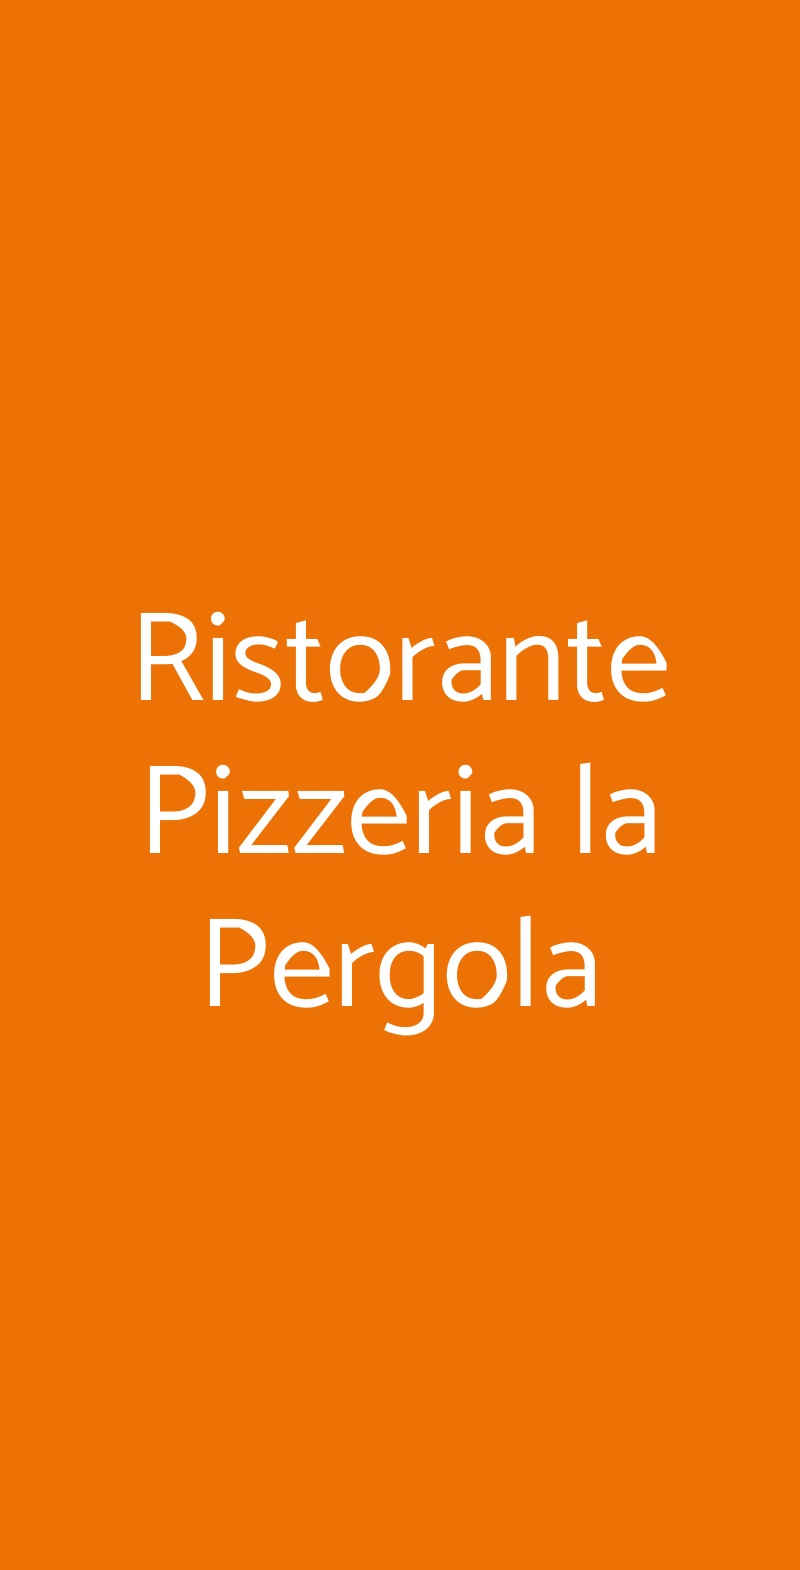 Ristorante Pizzeria la Pergola Sinagra menù 1 pagina